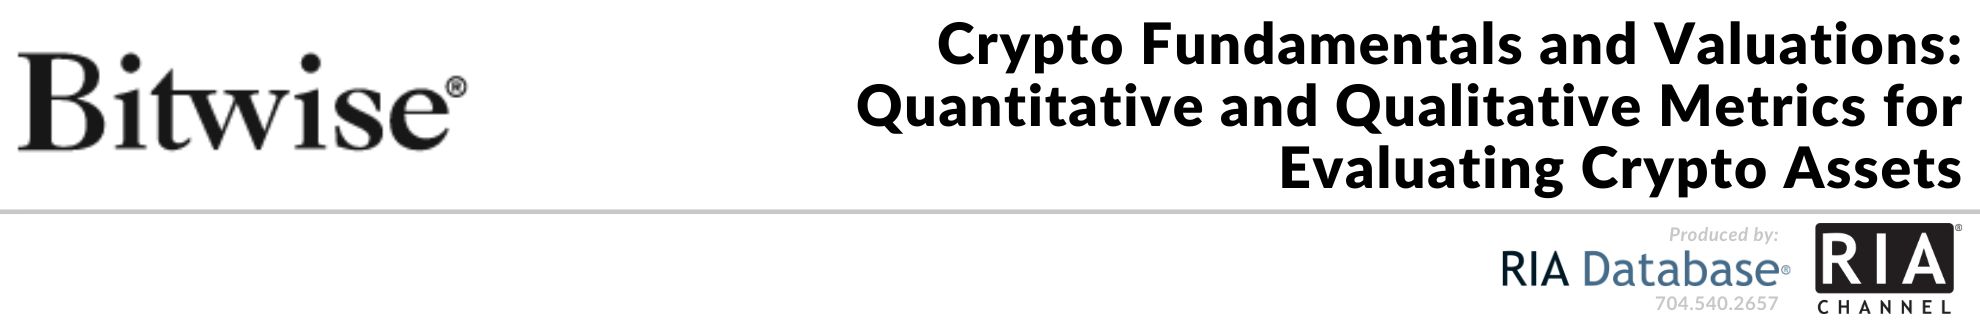 Crypto Fundamentals and Valuations: Quantitative and Qualitative Metrics for Evaluating Crypto Assets